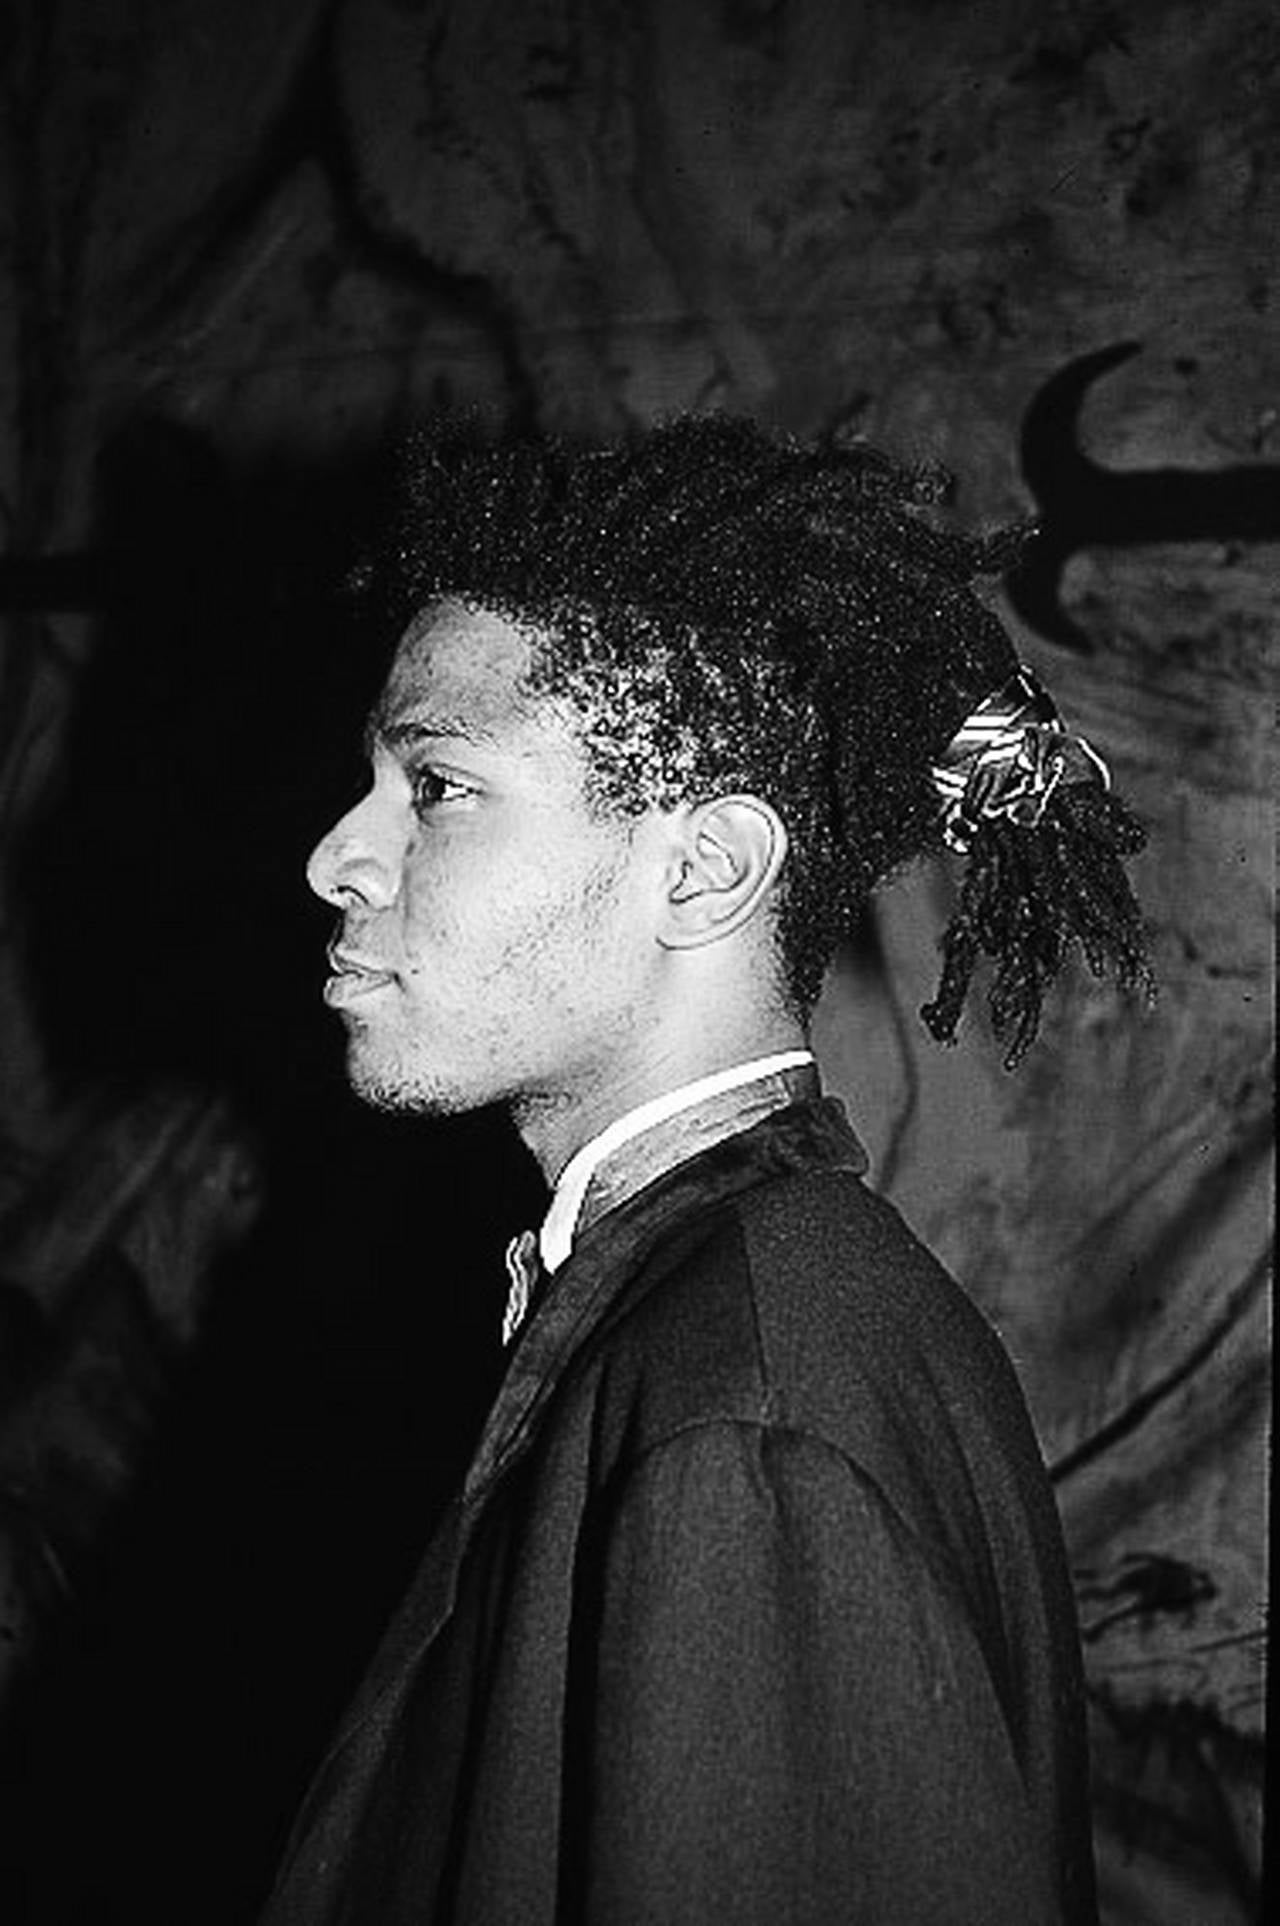 Portrait Photograph Roxanne Lowit - « Jean-Michel Basquiat I » - Portrait de profil latéral, photographie d'art, 1985